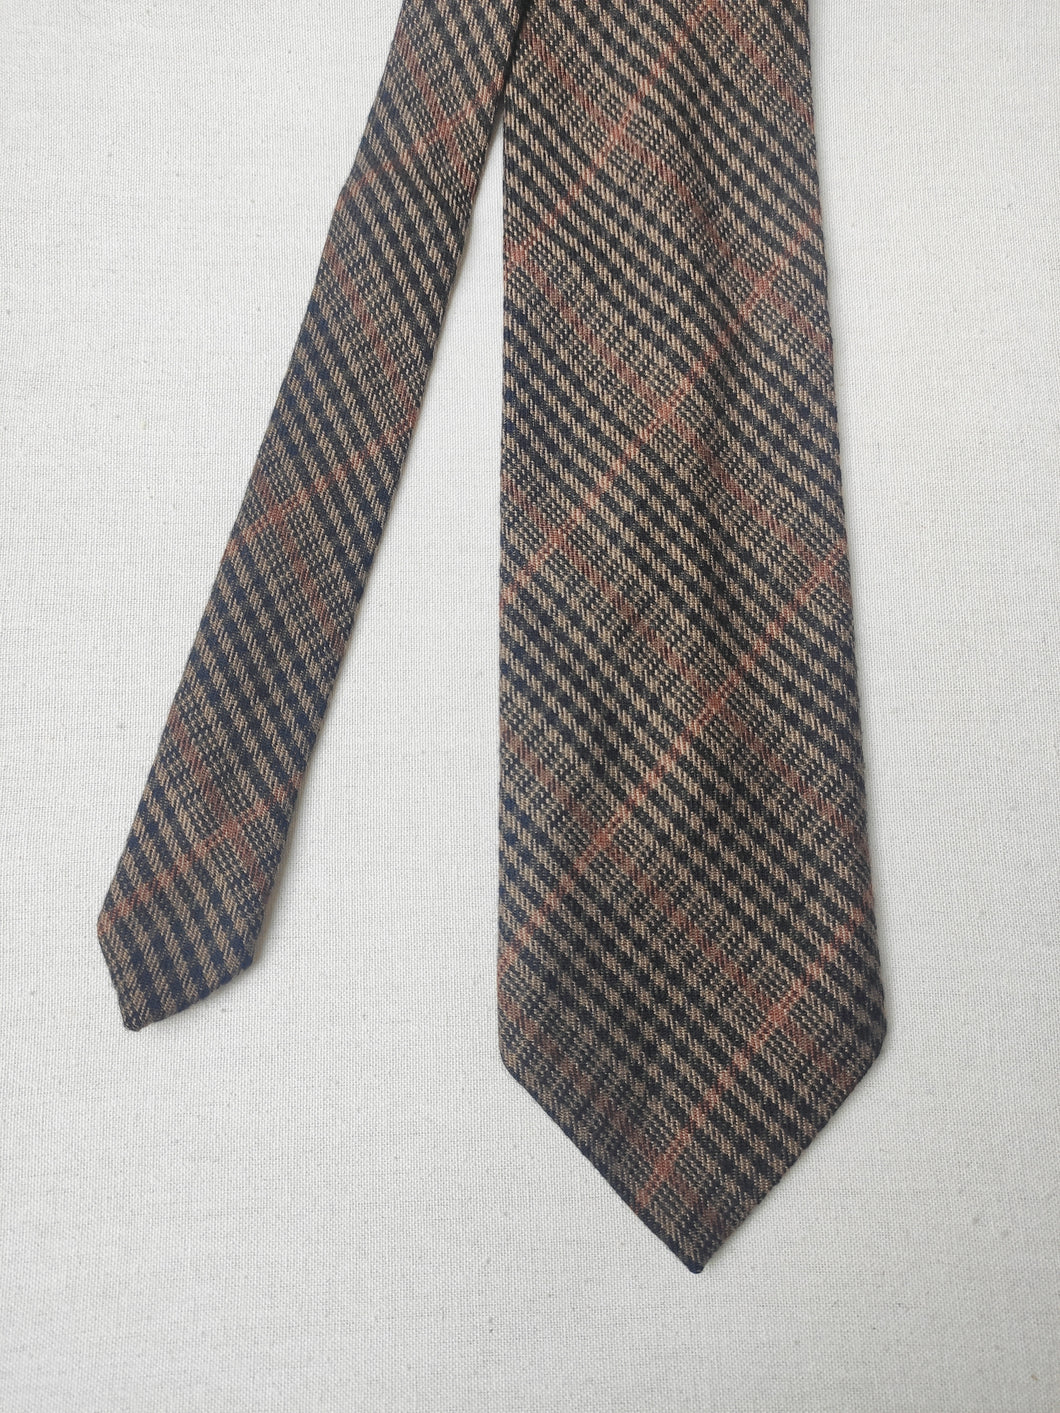 Harrison's cravate en cachemire Prince de Galles Made in Scotland